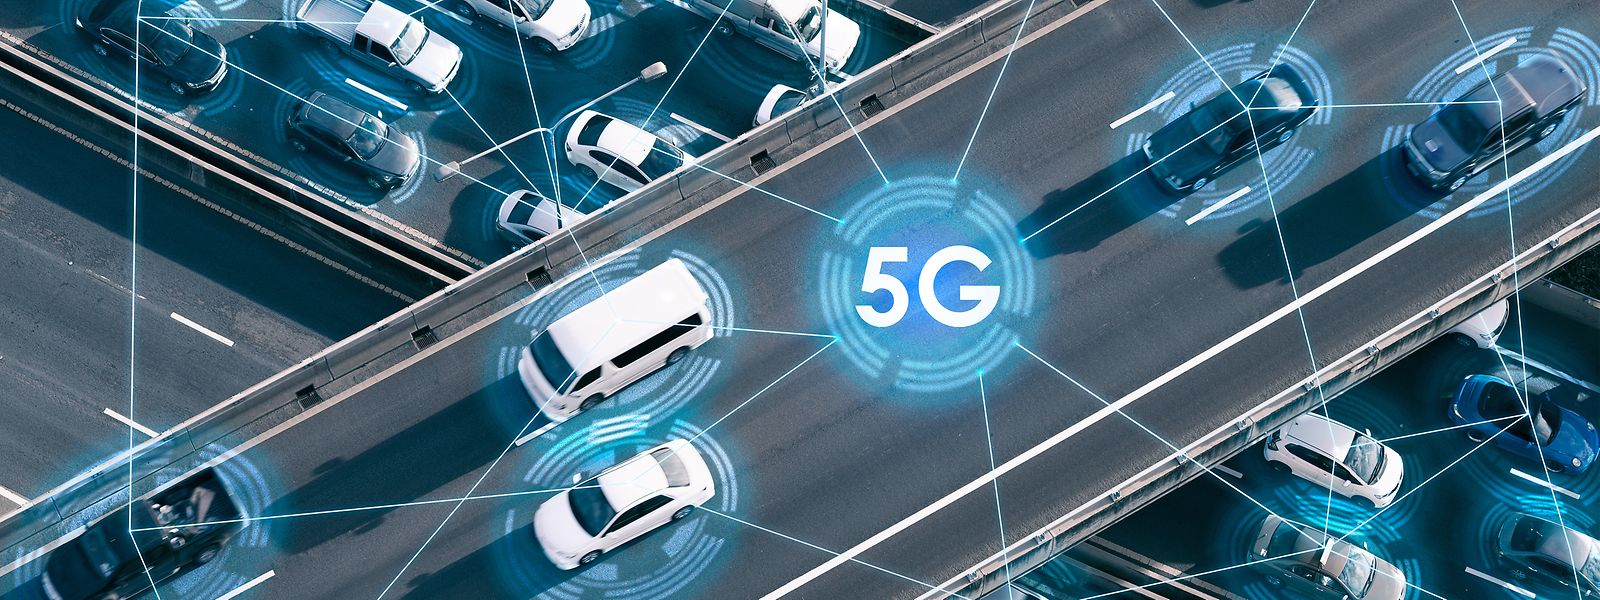 Grâce à la 5G, les véhicules sont en mesure de communiquer en quelques secondes, ce qui pourrait avec sa généralisation permettre de mieux anticiper la route pour les conducteurs.